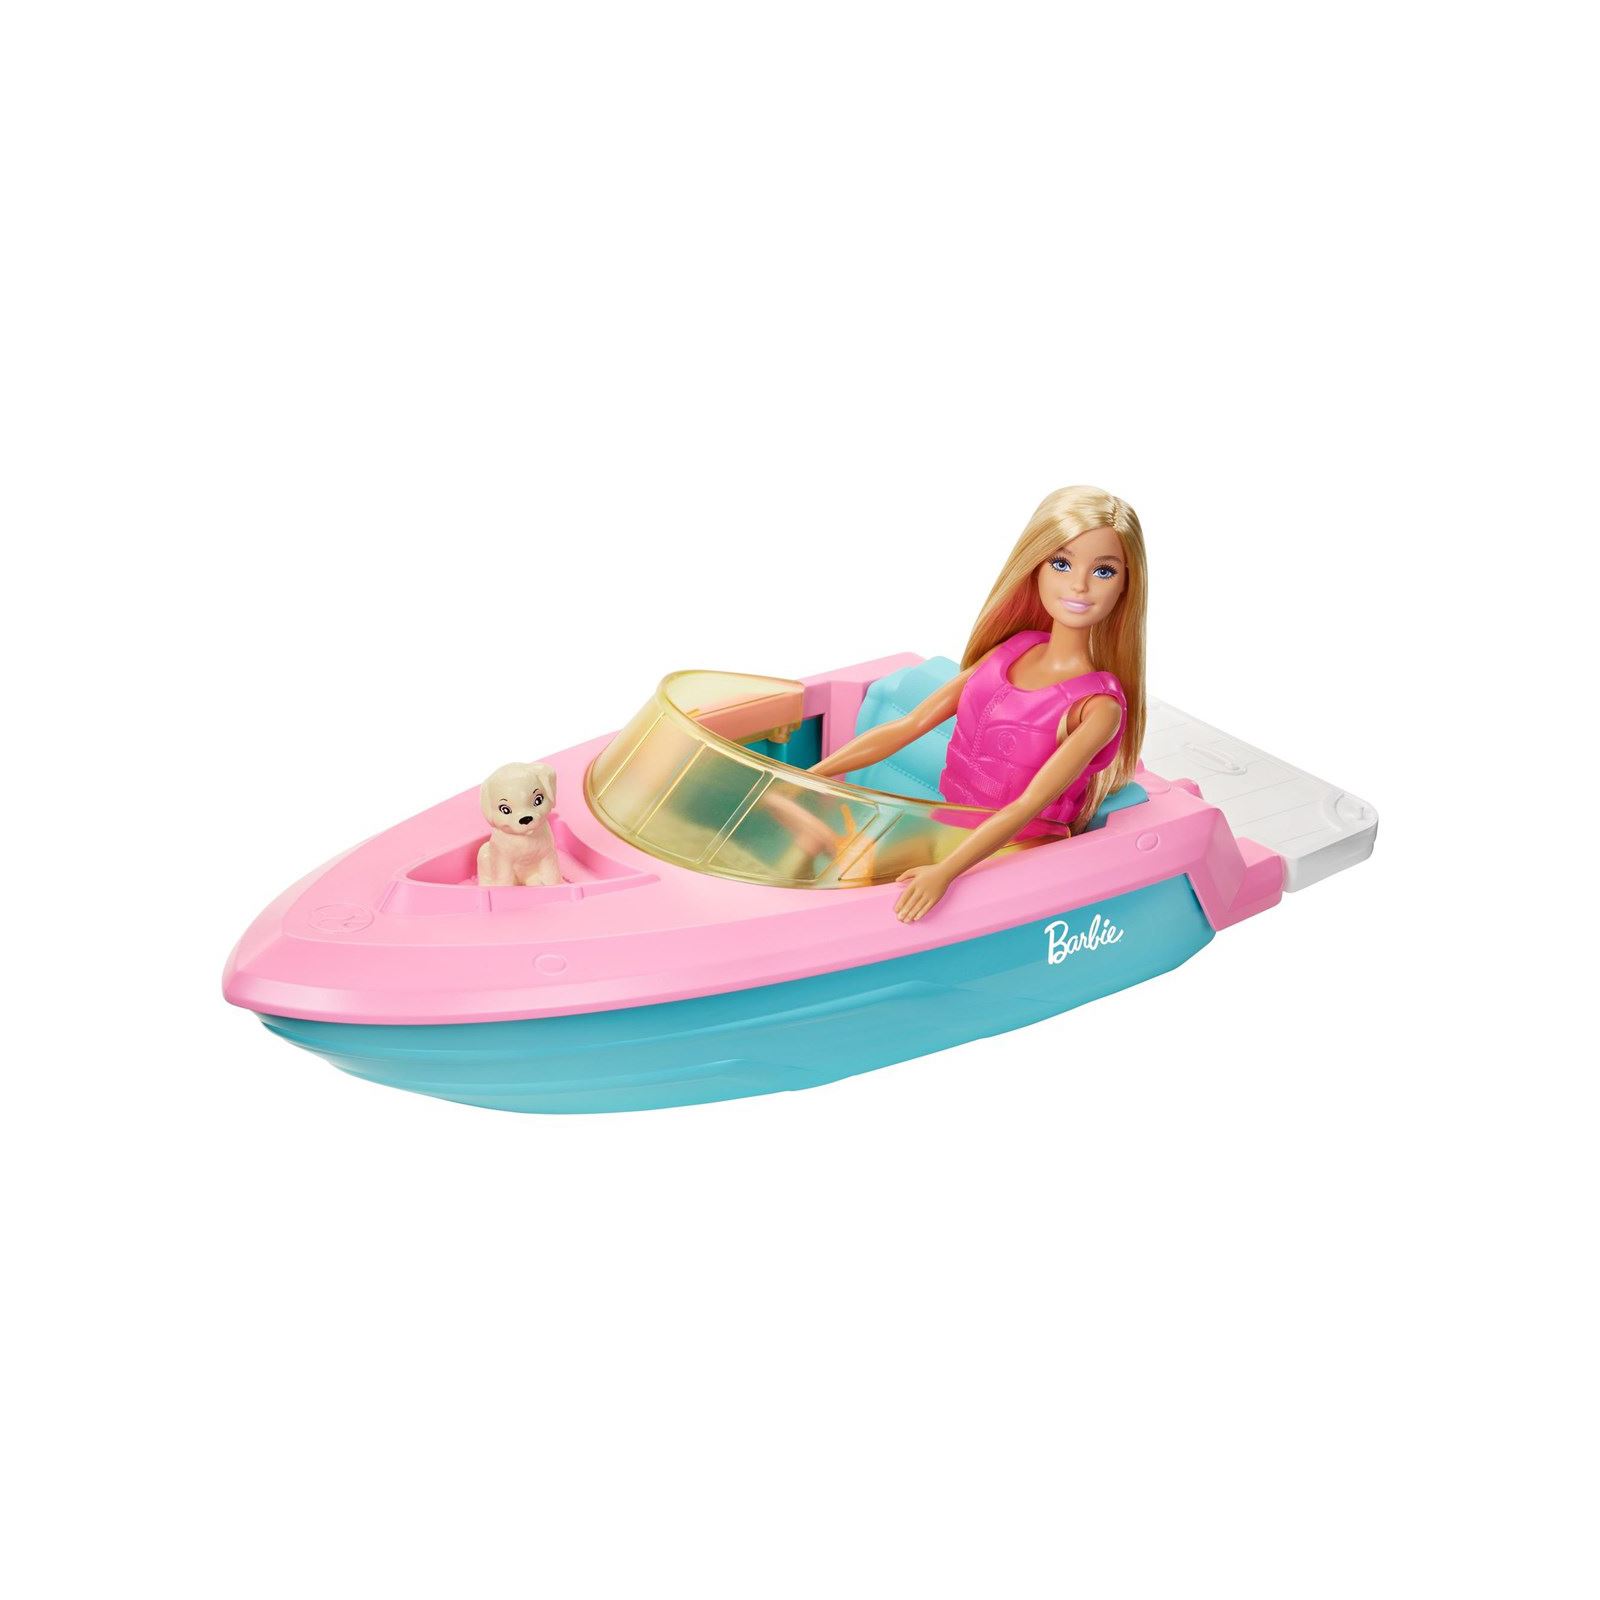 Barbie Bebek Ve Teknesi Oyun Seti 3+ Yaş